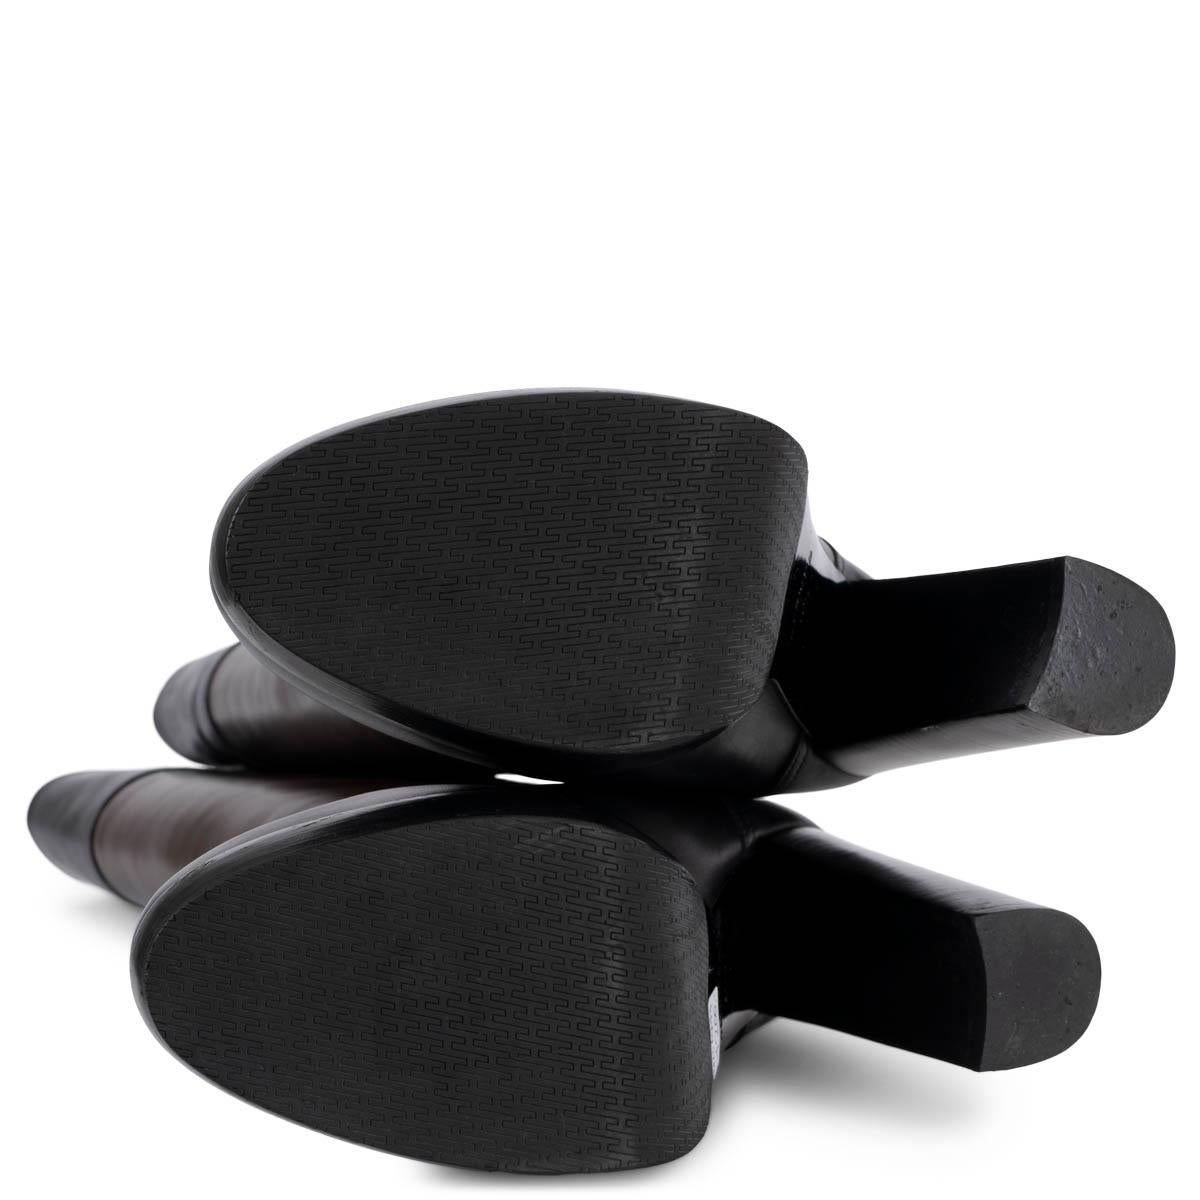 HERMES cuir marron foncé et noir 2010 PLATFORMBoots Chaussures 40.5 en vente 2